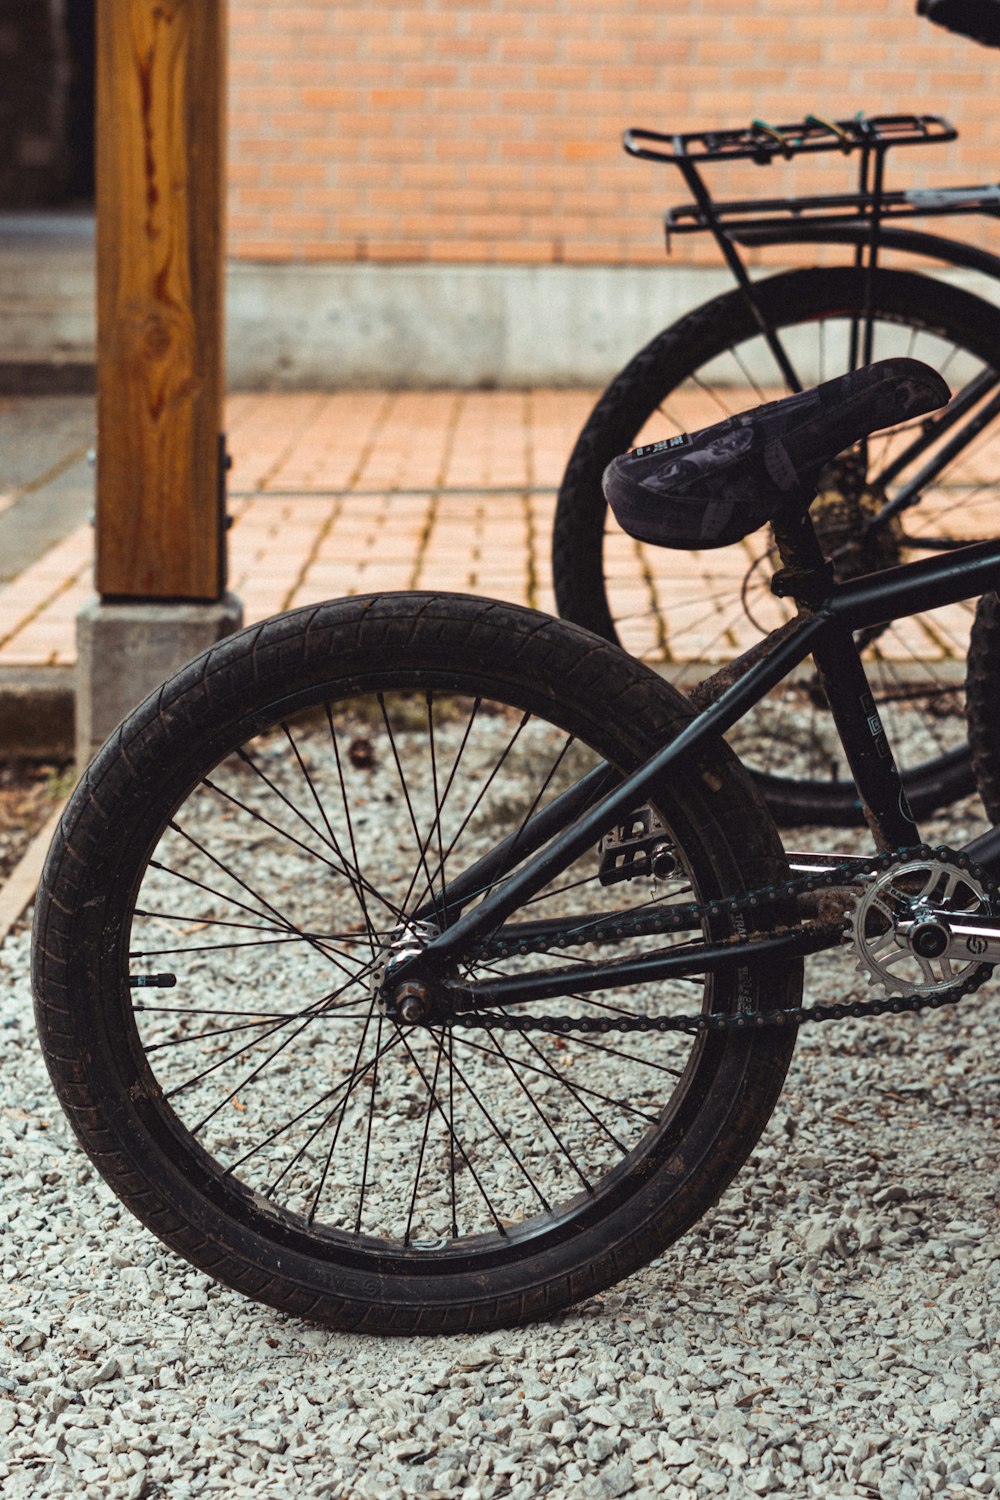 black bicycle on gray concrete floor